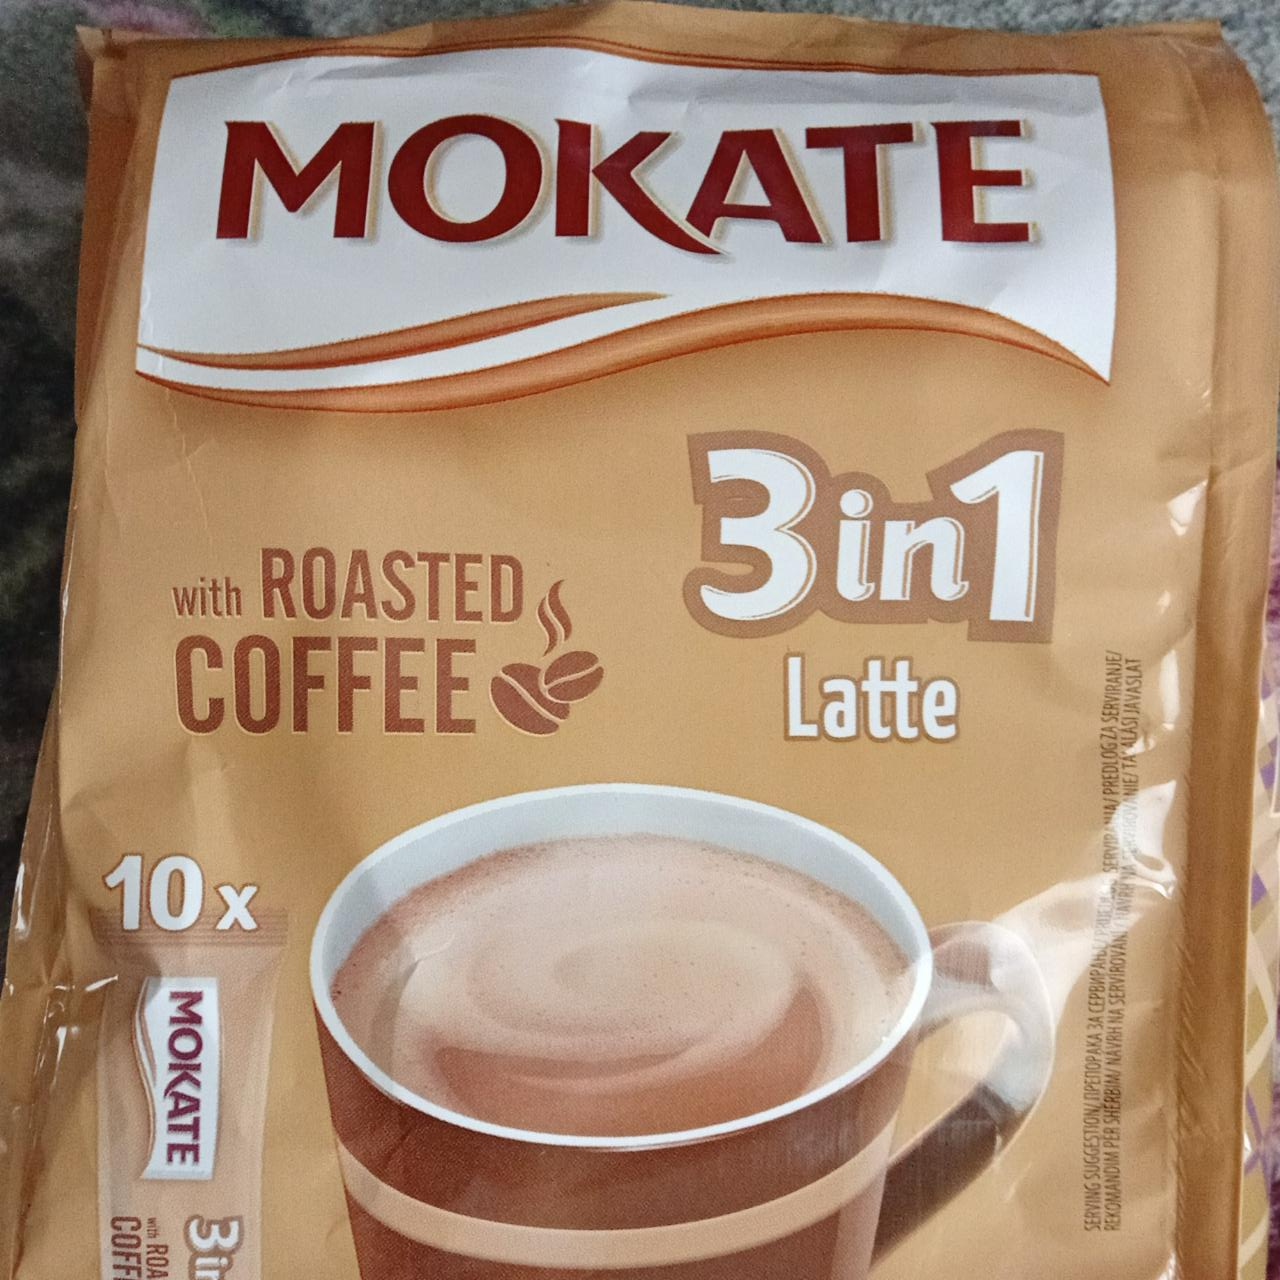 Képek - Mokate 3in1 Latte azonnal oldódó kávéspecialitás